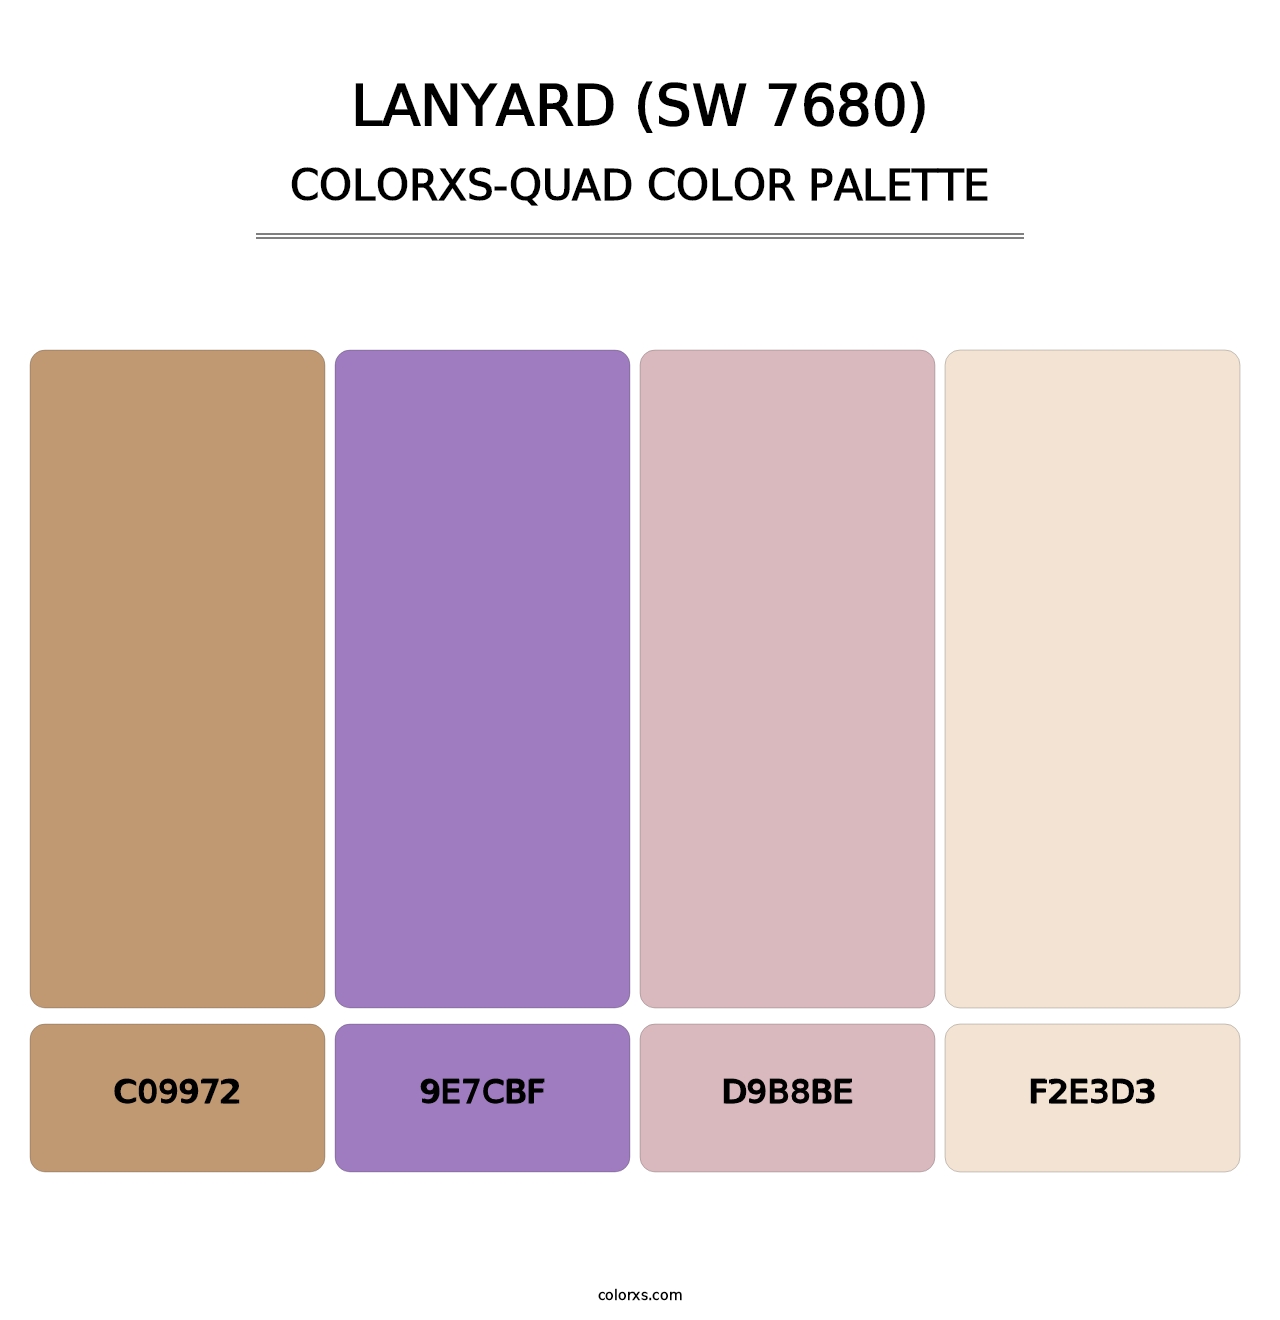 Lanyard (SW 7680) - Colorxs Quad Palette